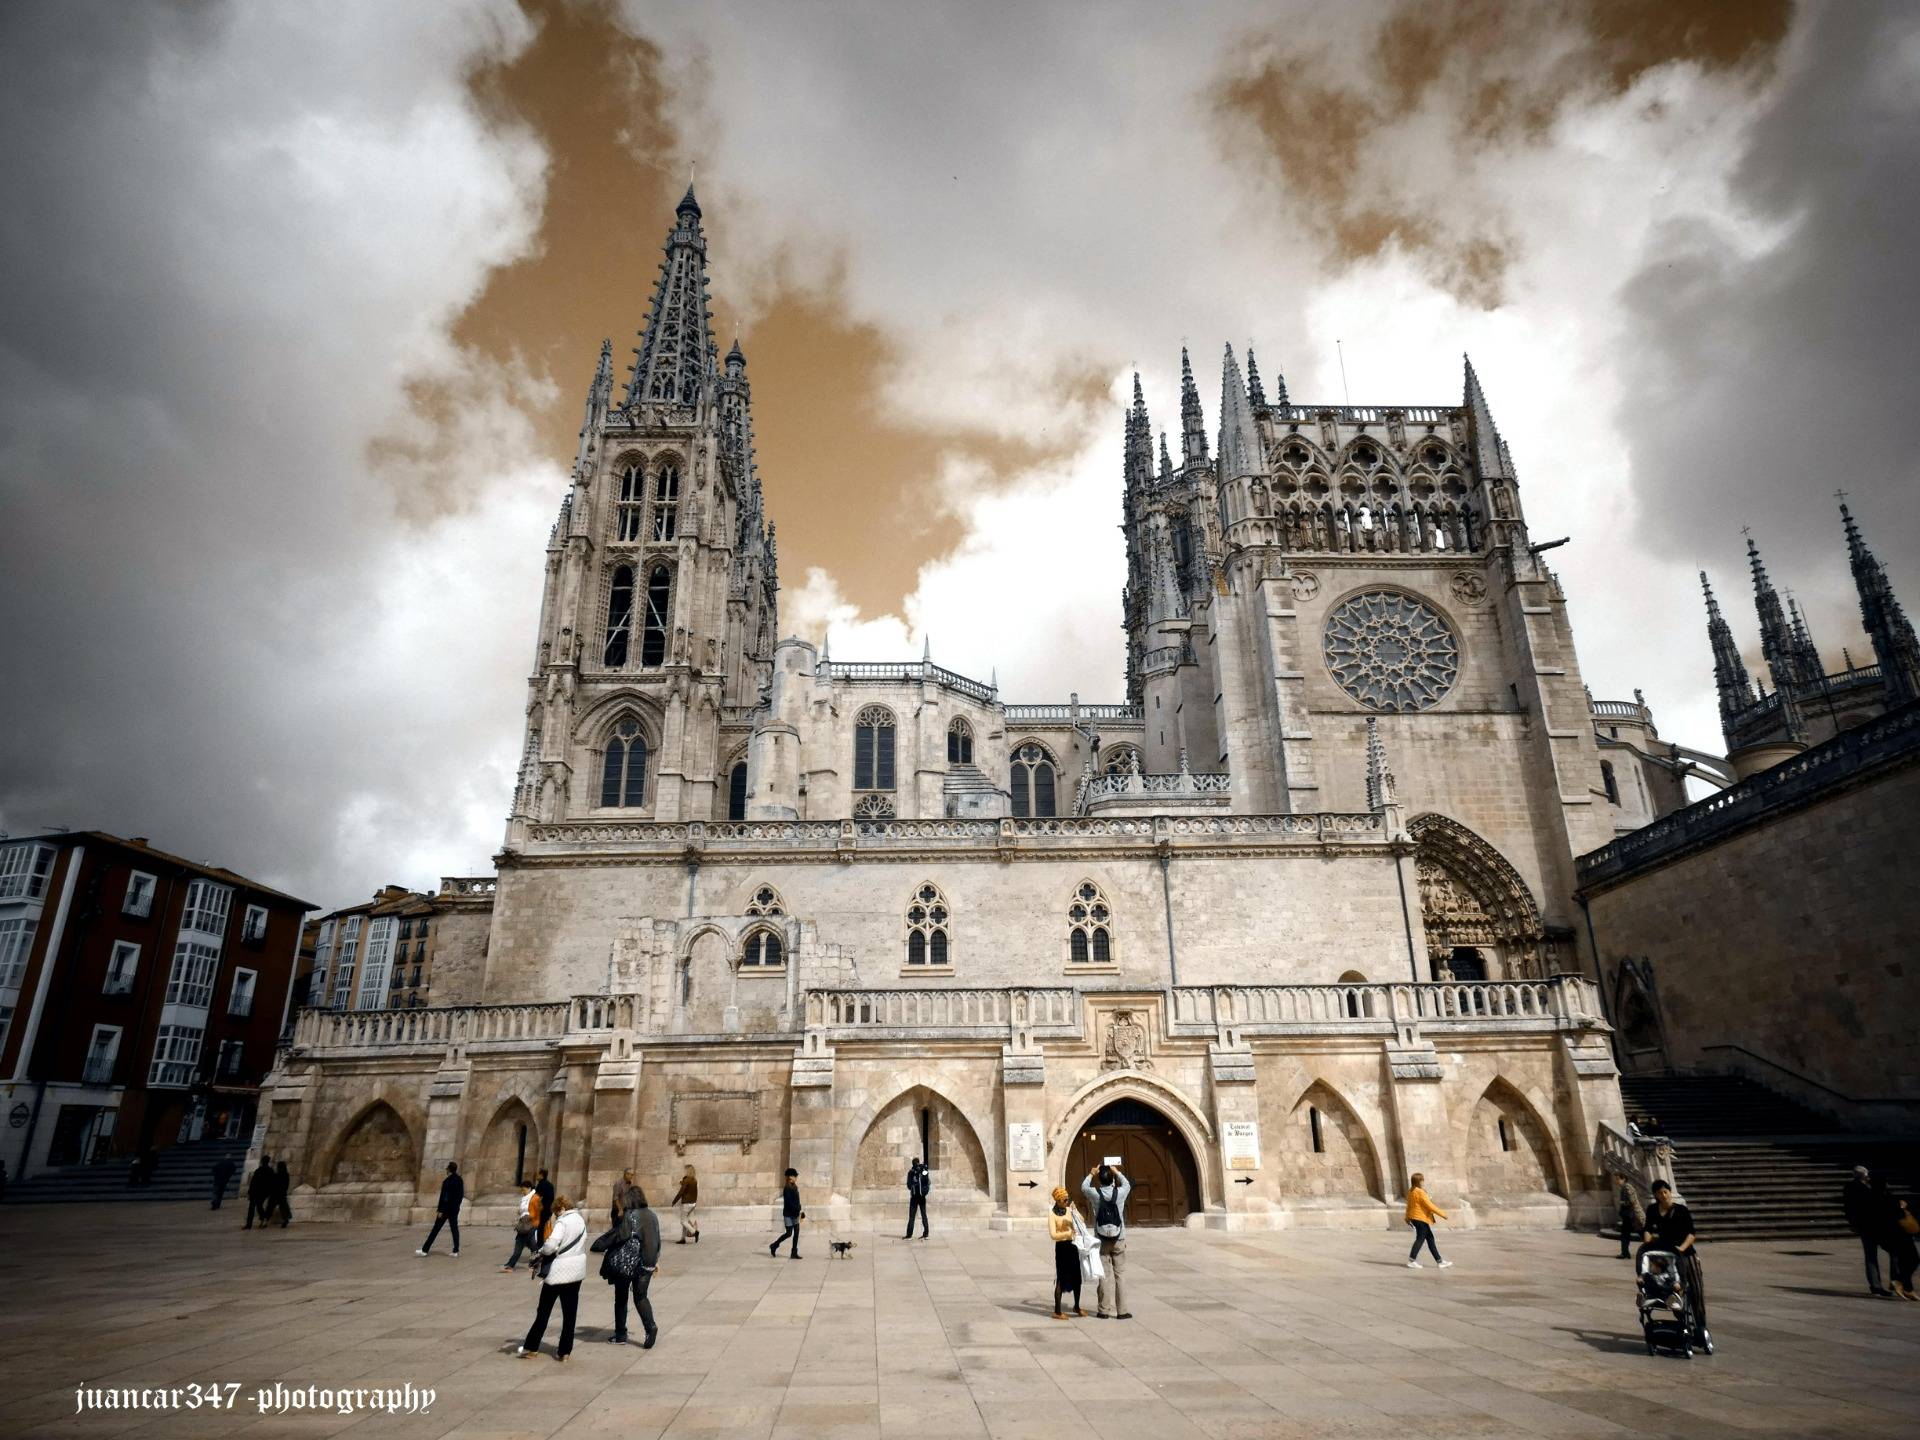 A visit to the cathedral of Santa María de Burgos